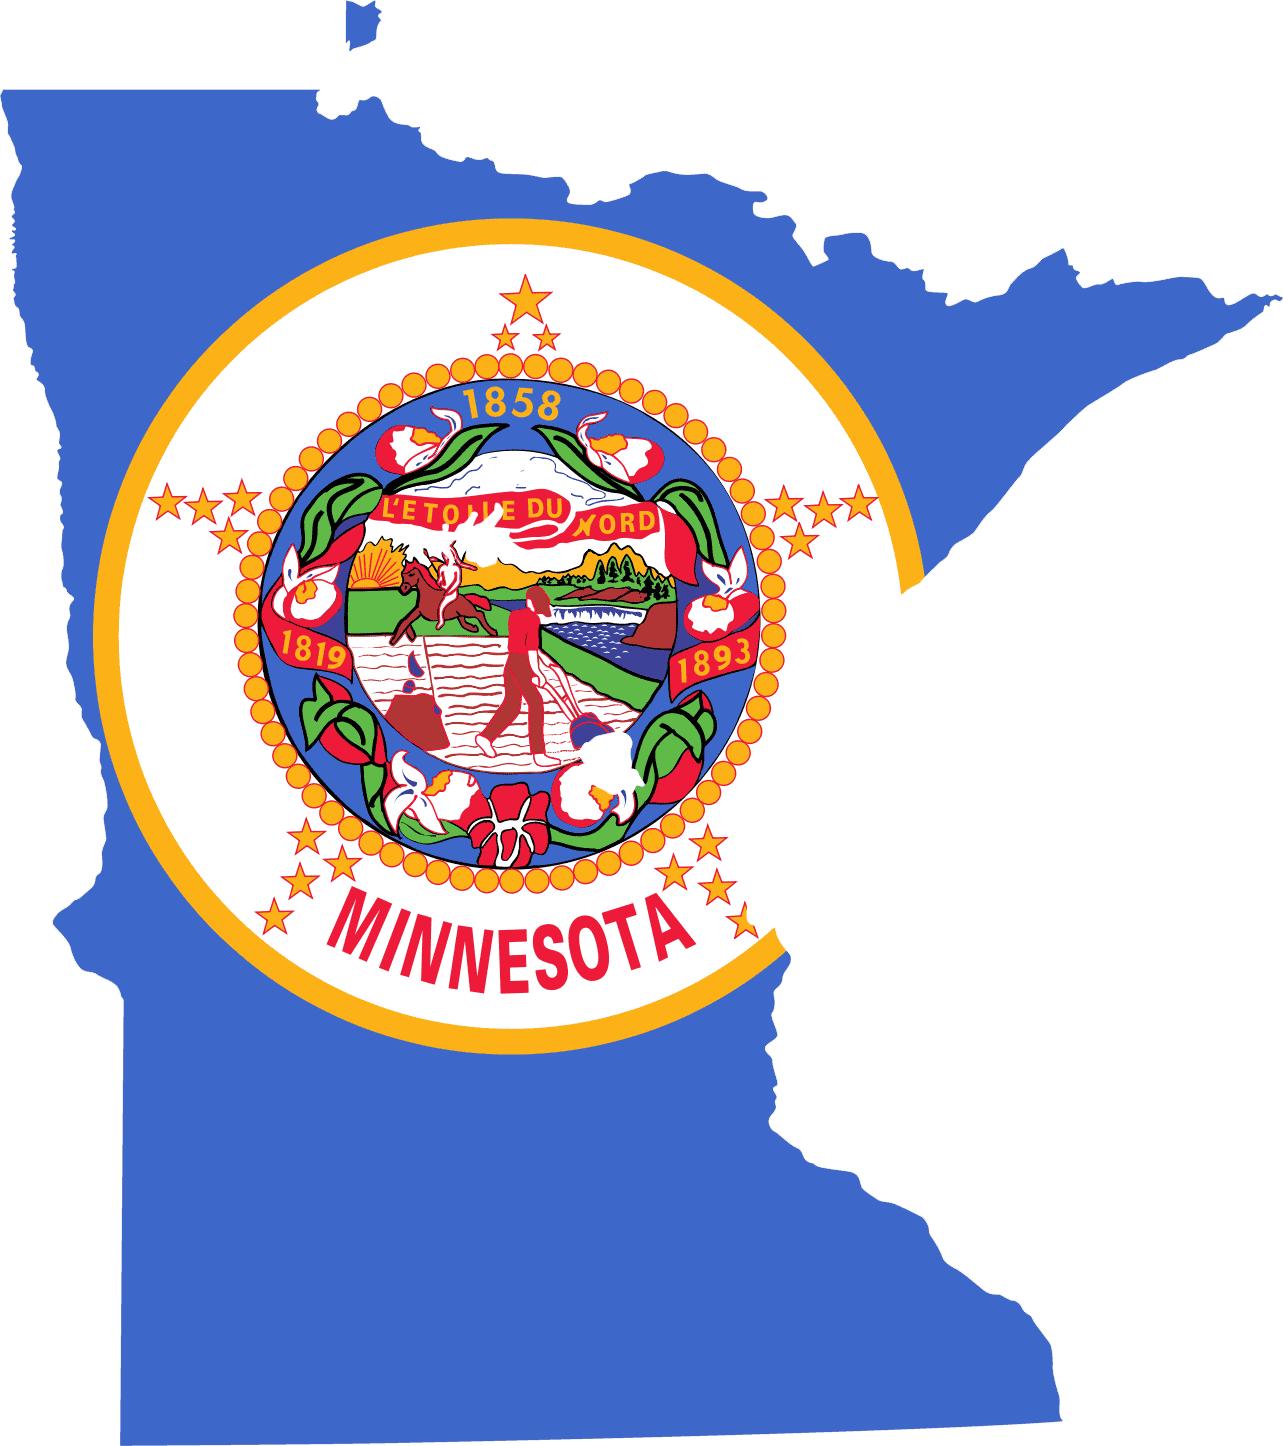 Minnesota_bayrak_harita.png